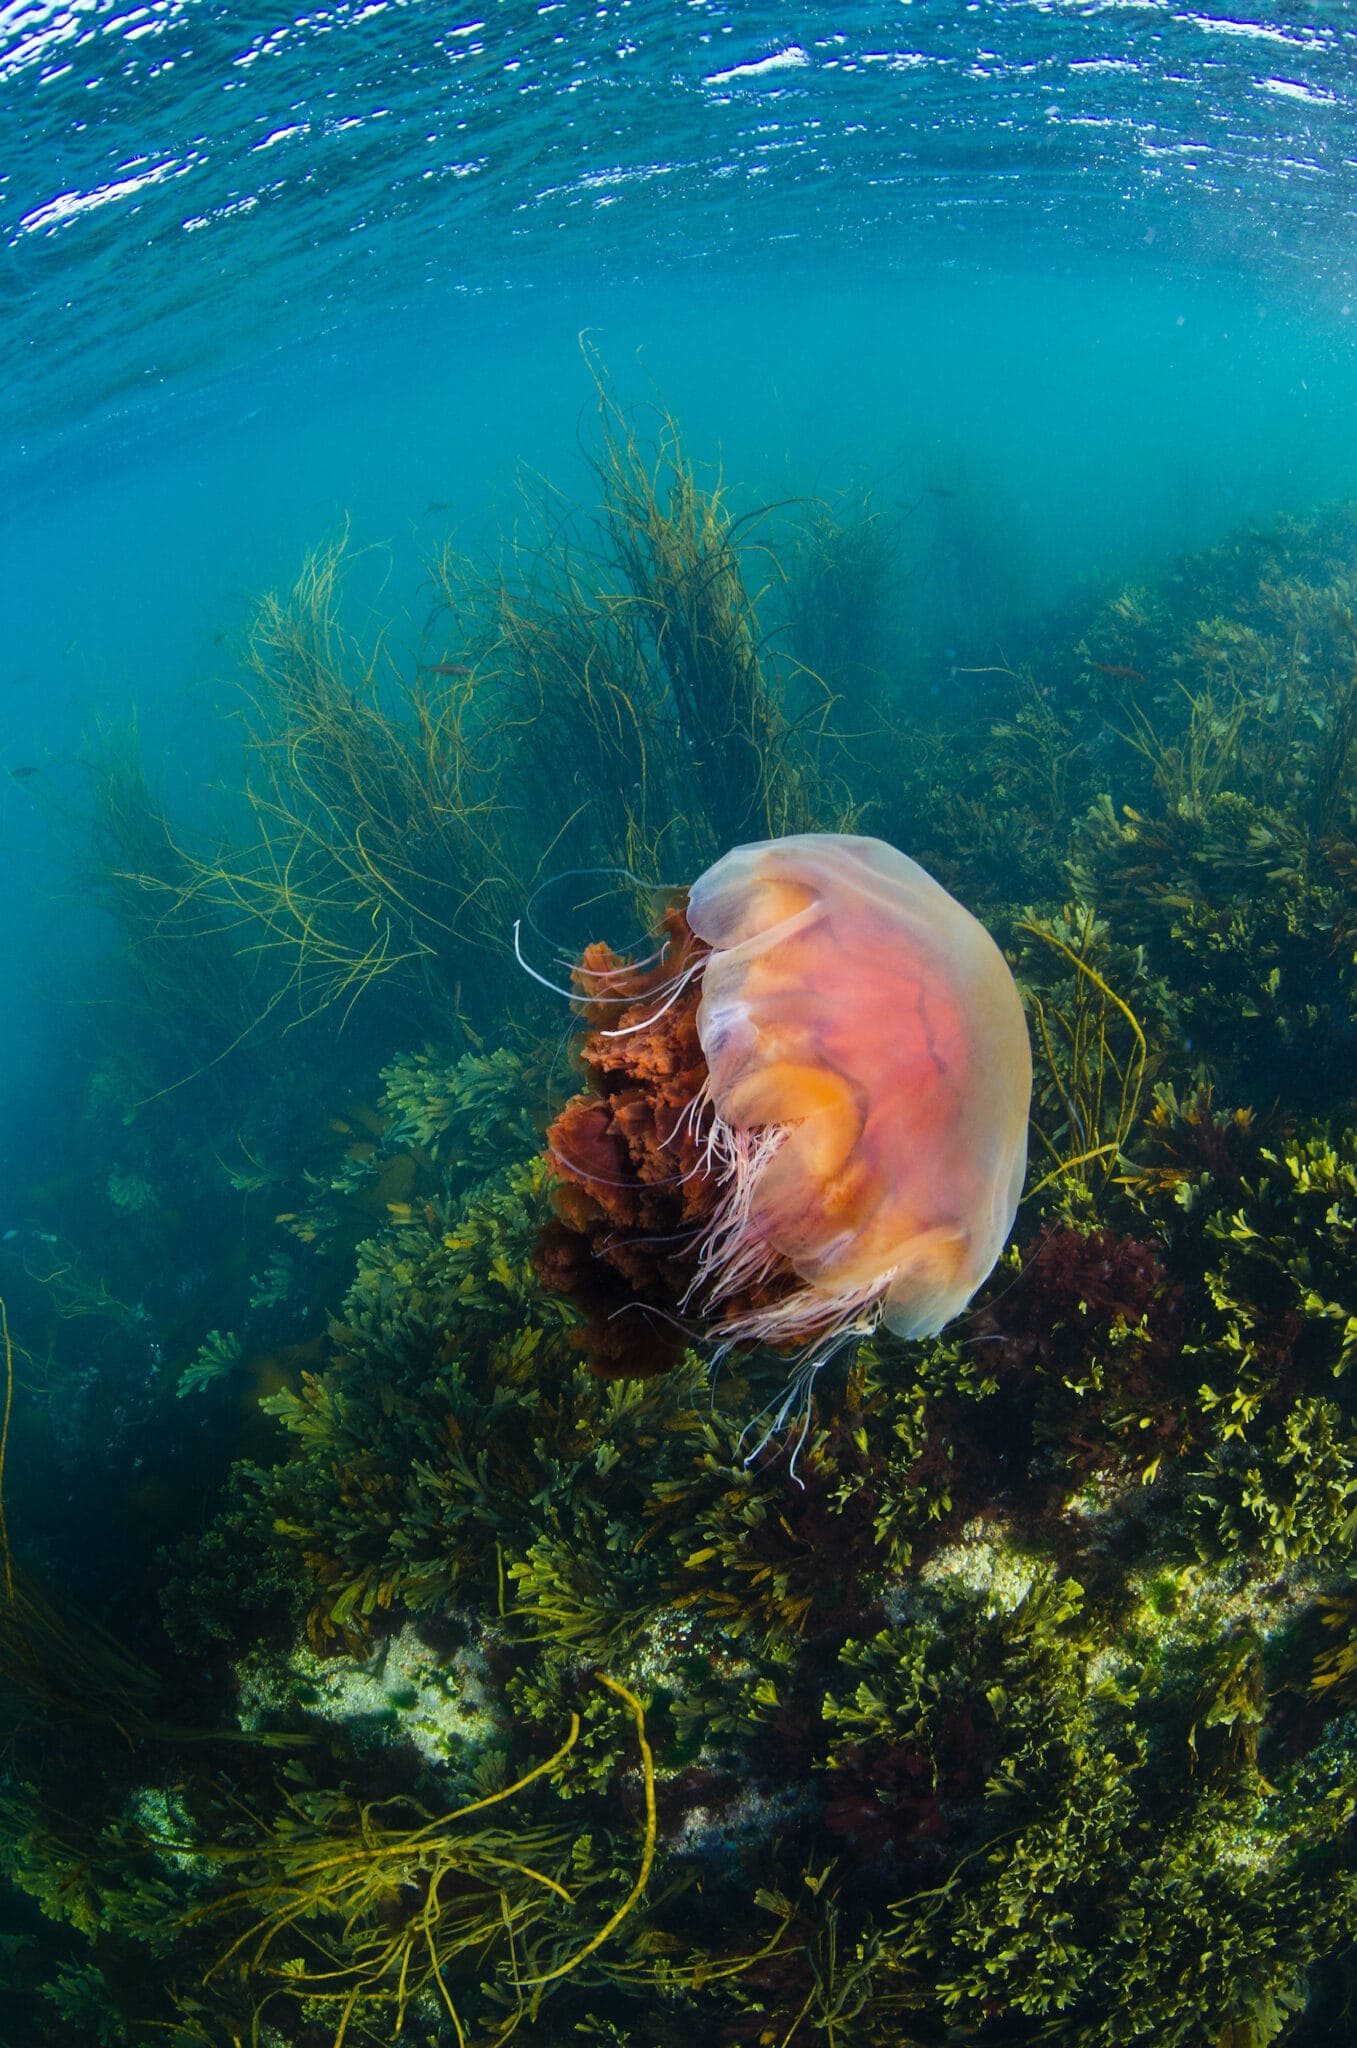 Jellyfish under water